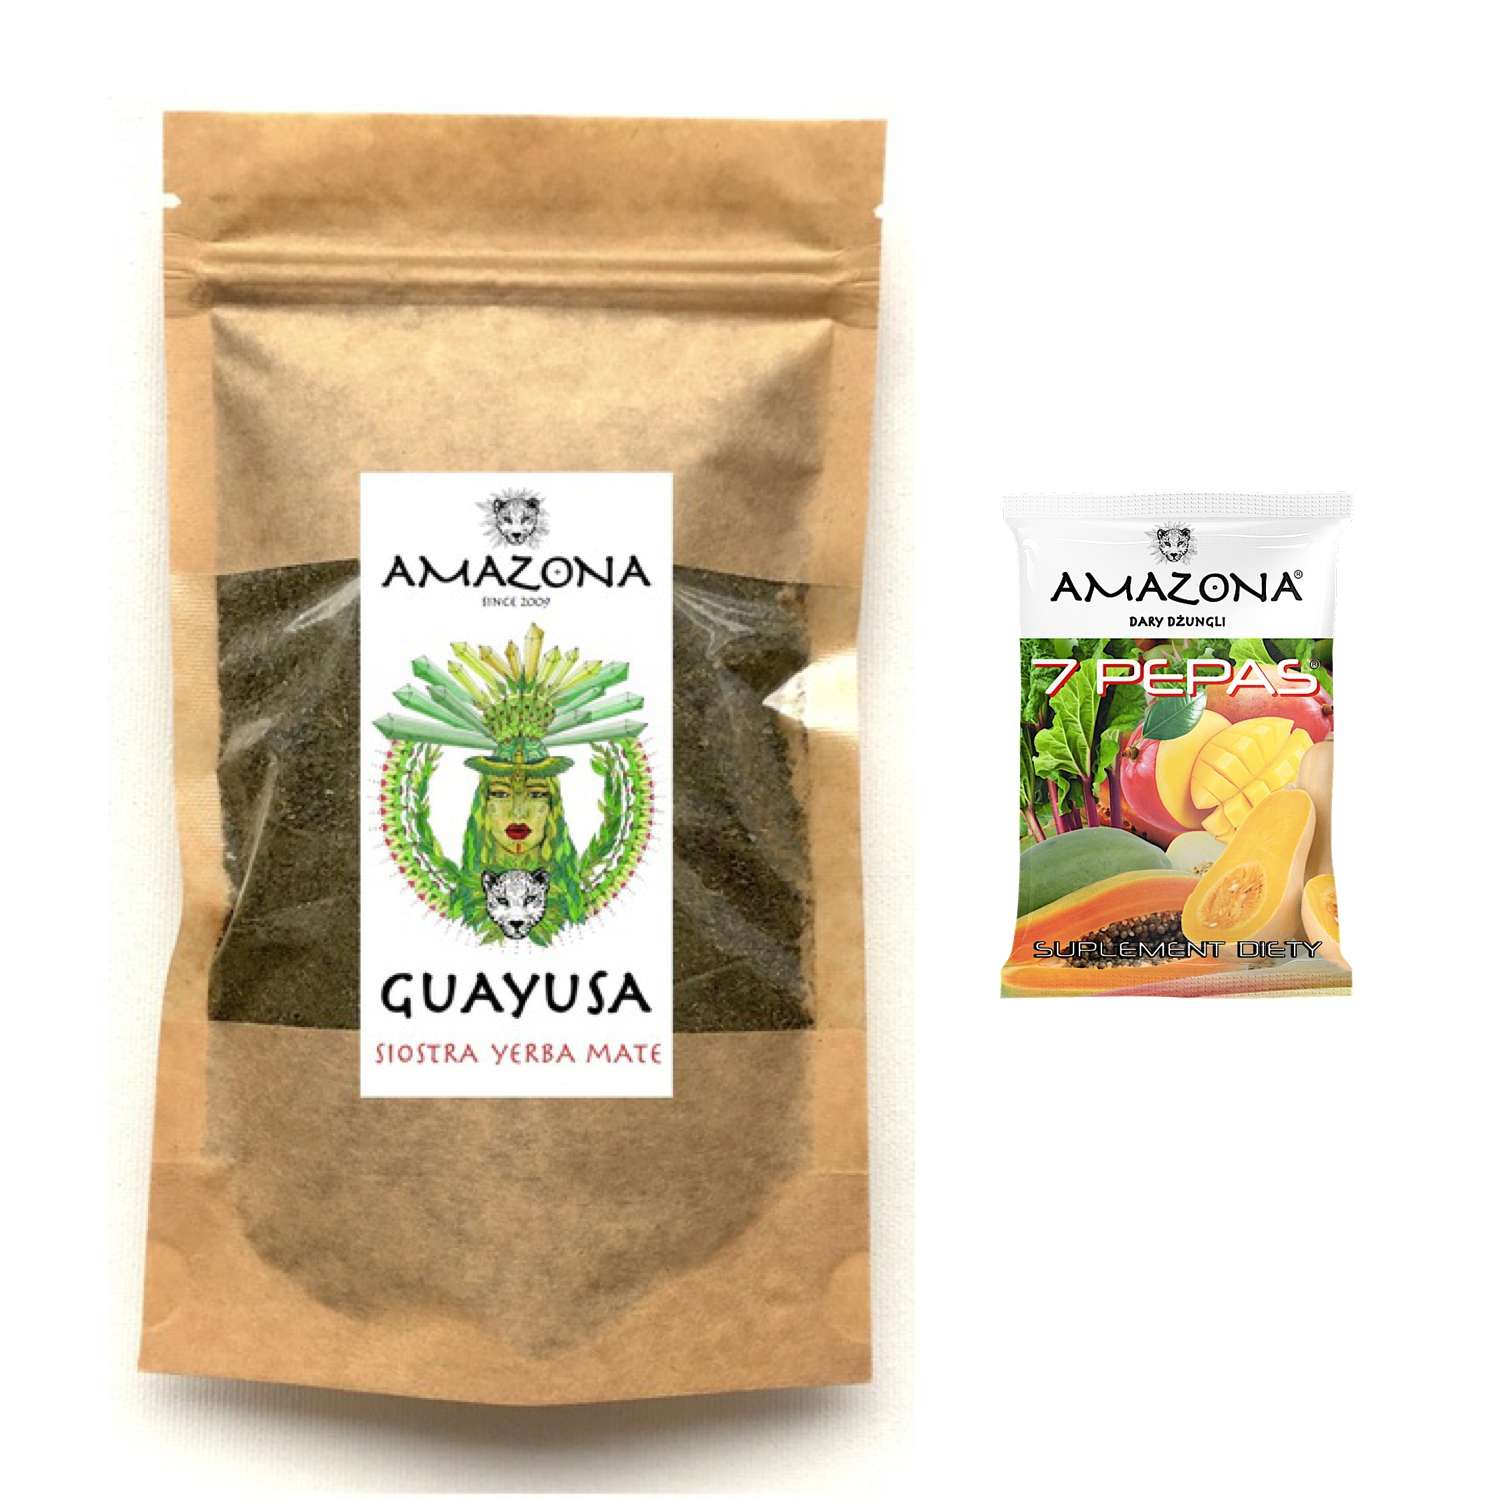 guayusa-amazona